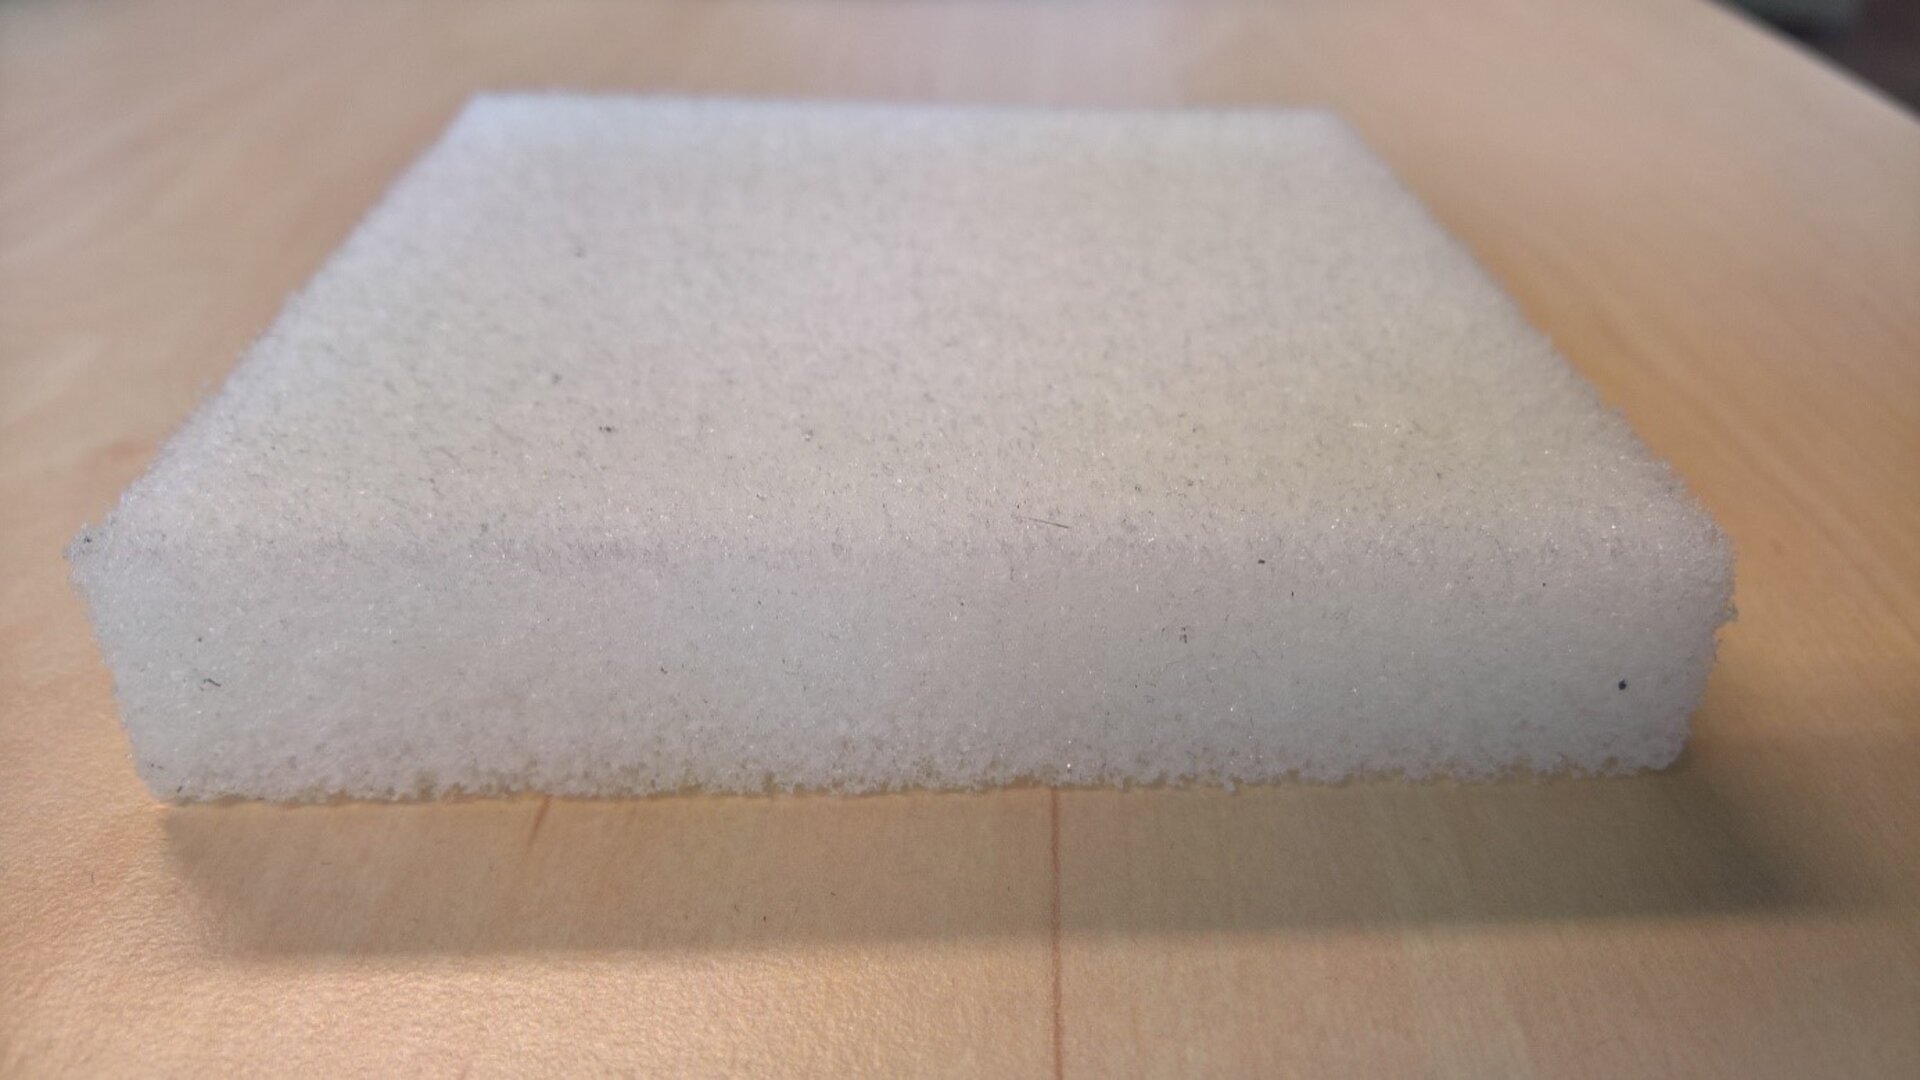 polyurethane foam baby mattress safe